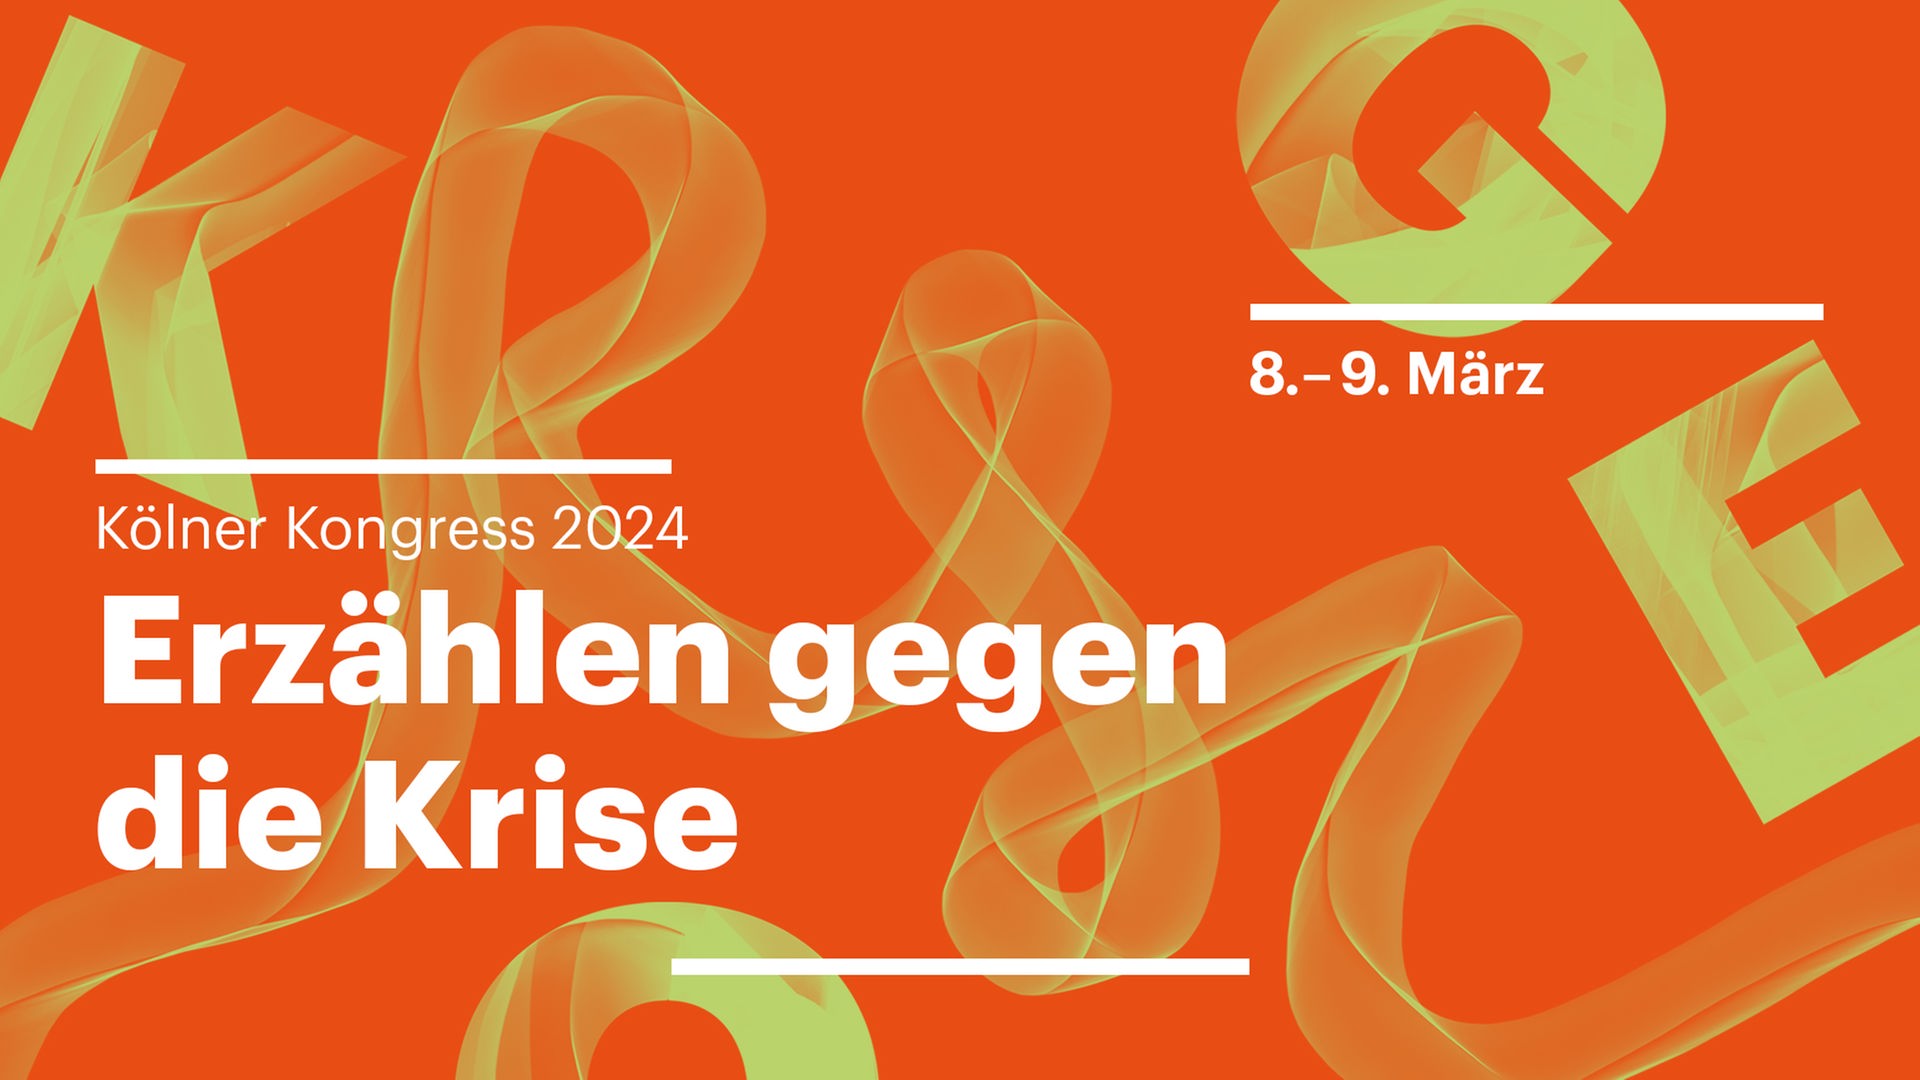 Kölner Kongress 2024: Erzählen gegen die Krise. (8. bis 9. März 2024)